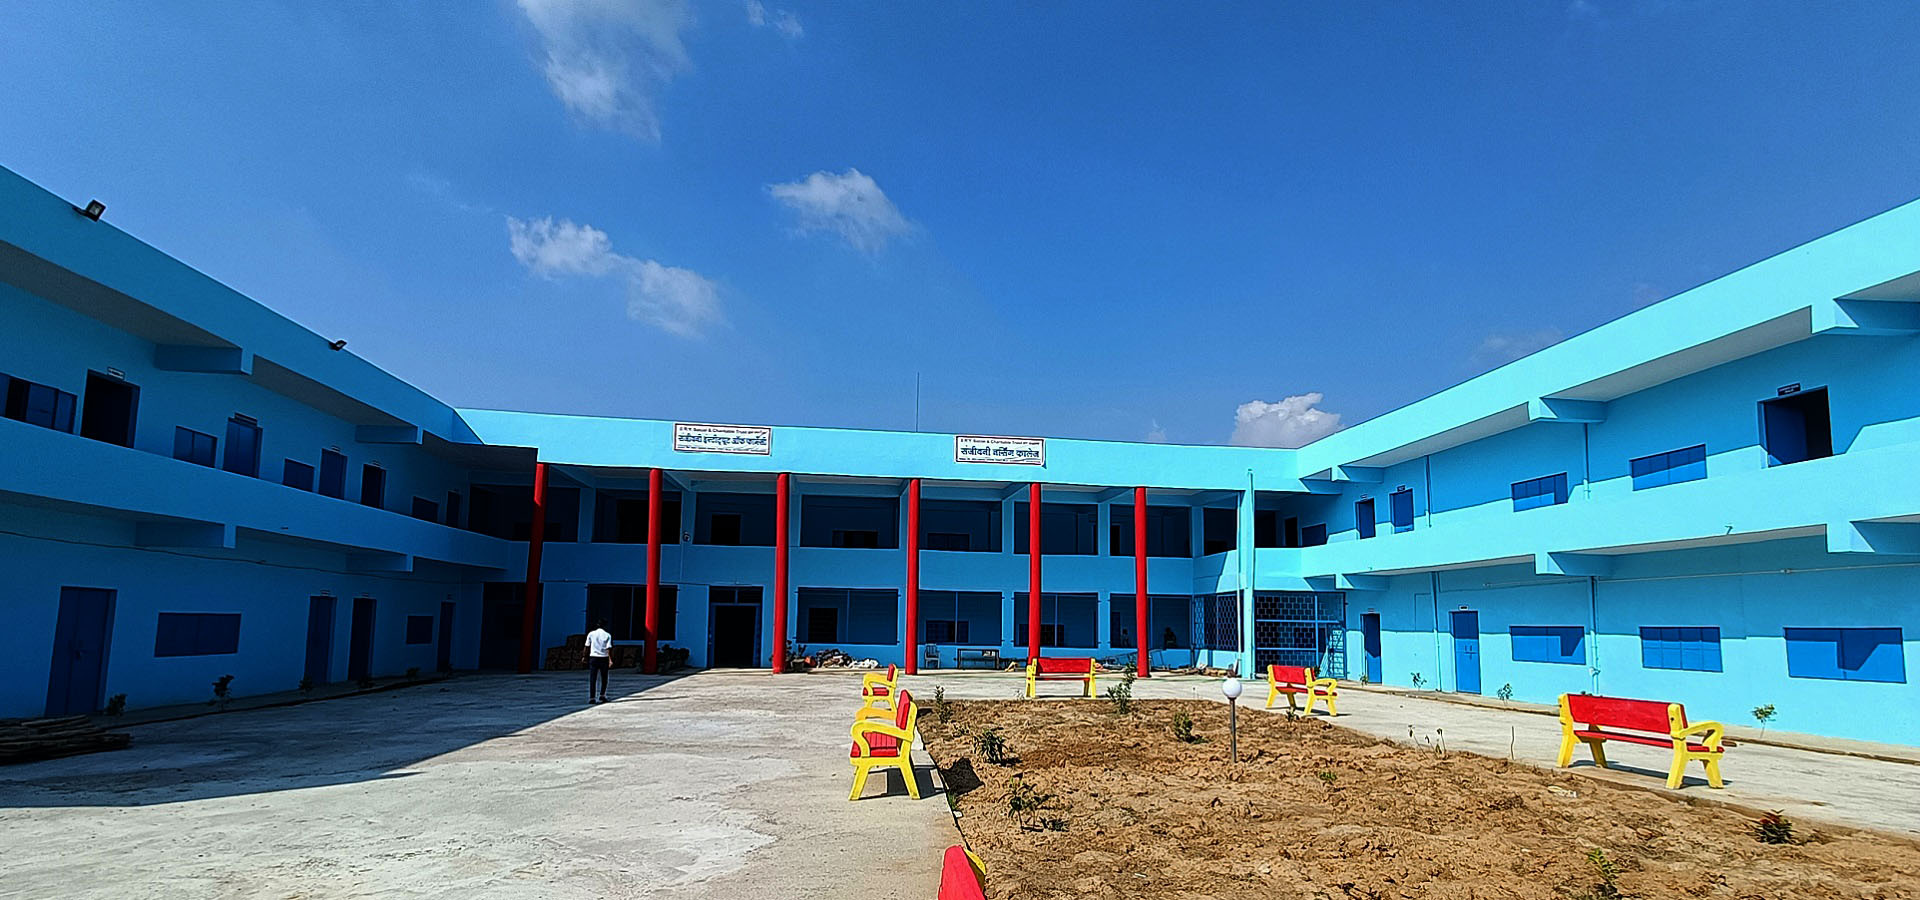 Sanjeevani Nursing College, Pratapgarh Image